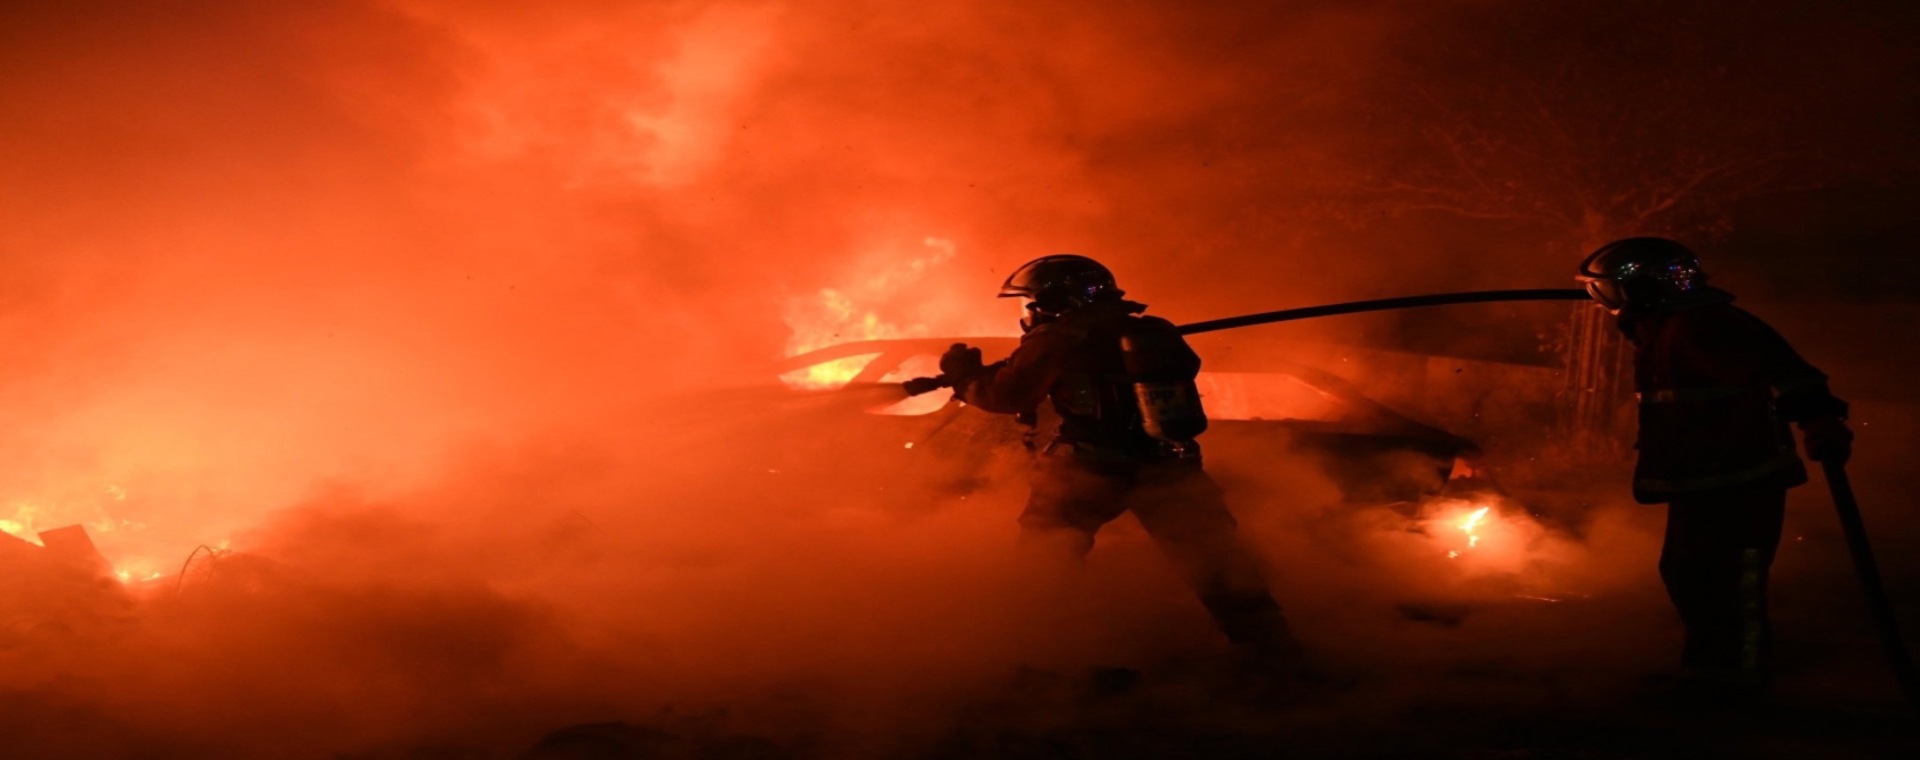  Kebakaran Hebat di Hutan Yunani, 18 Imigran Tewas Terbakar